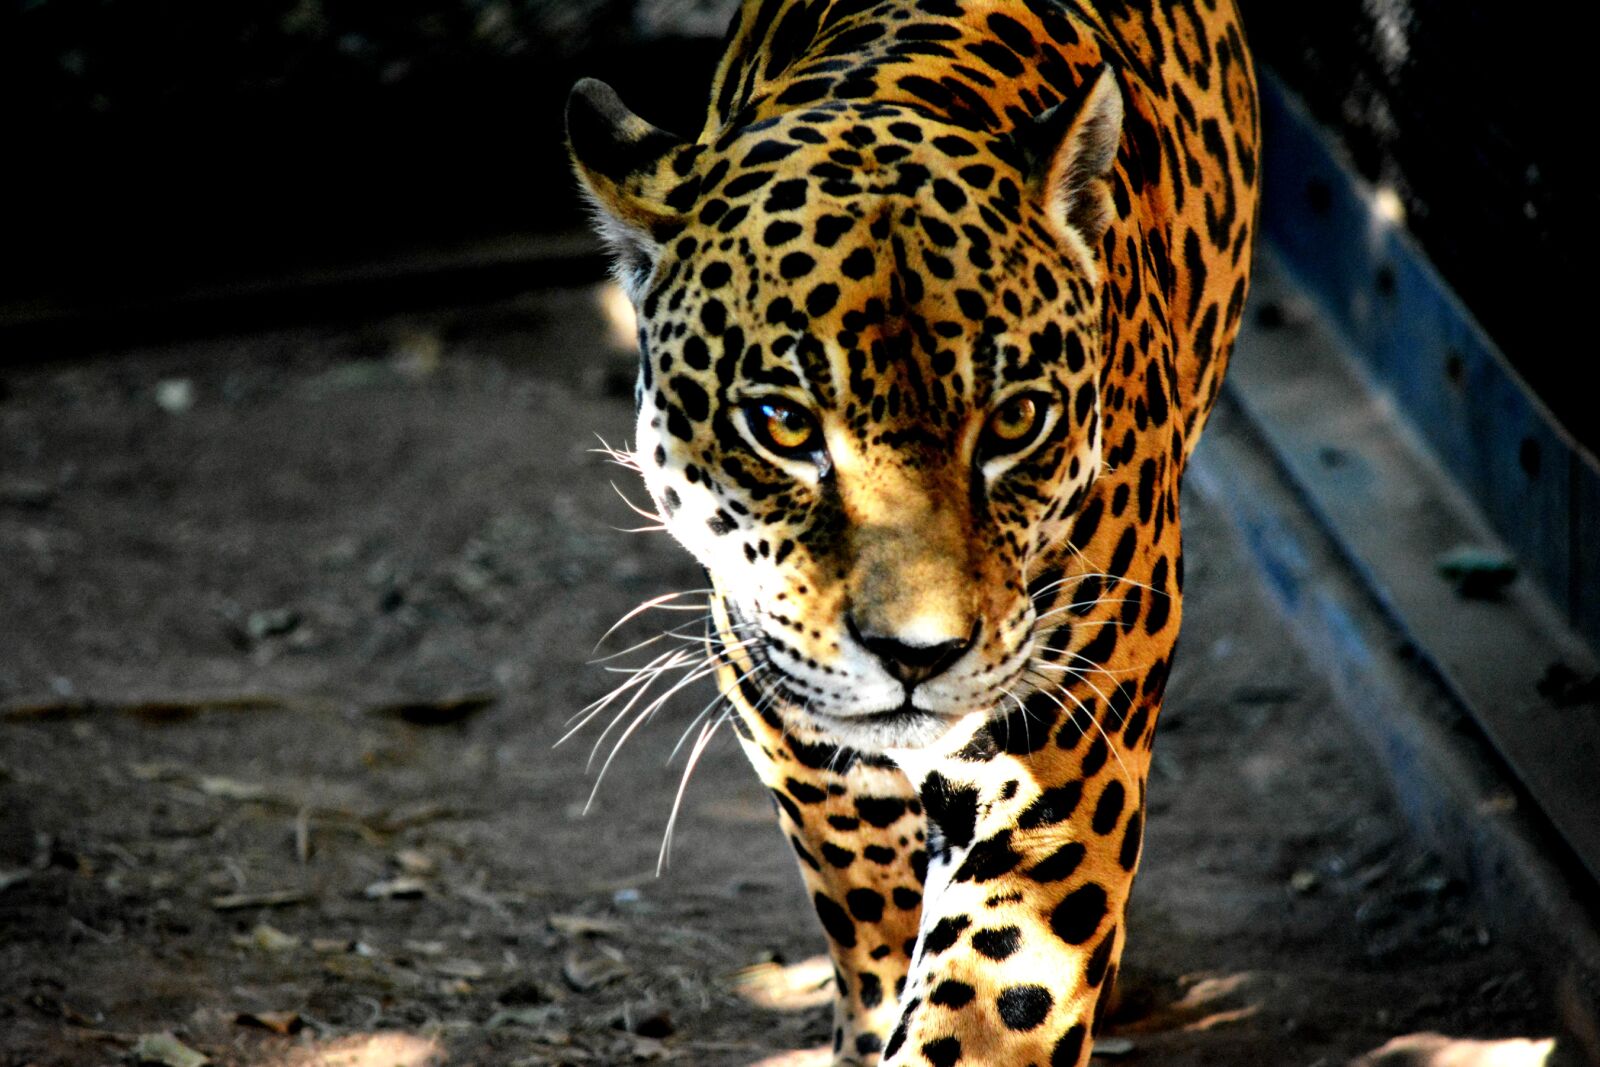 Nikon D5200 sample photo. "Bigcat, bigcats, jaguar, jaguars" photography